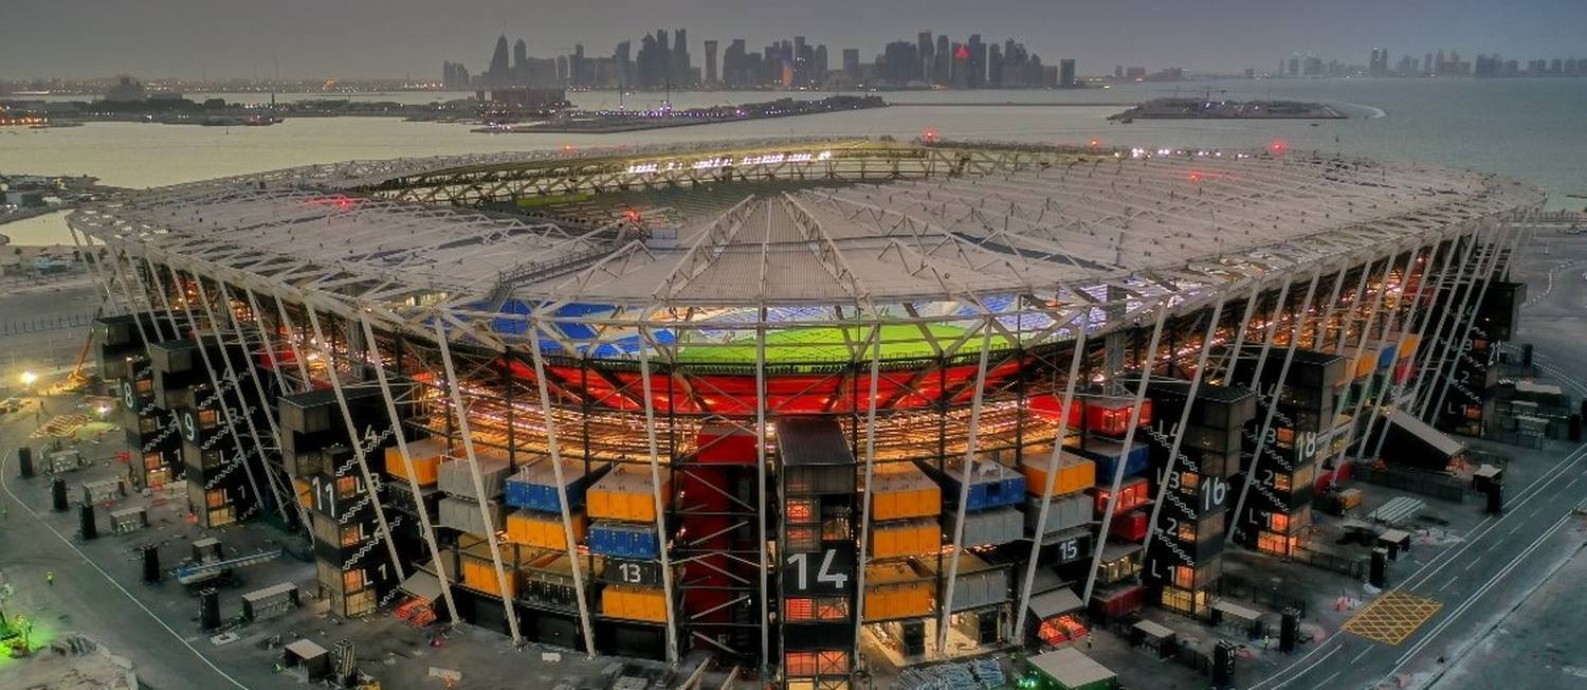 Estádio 974, feito com 974 contâineres, é o sétimo estádio a ficar pronto no Qatar, de oito que receberão jogos do Mundial Foto: HANDOUT / Reuters